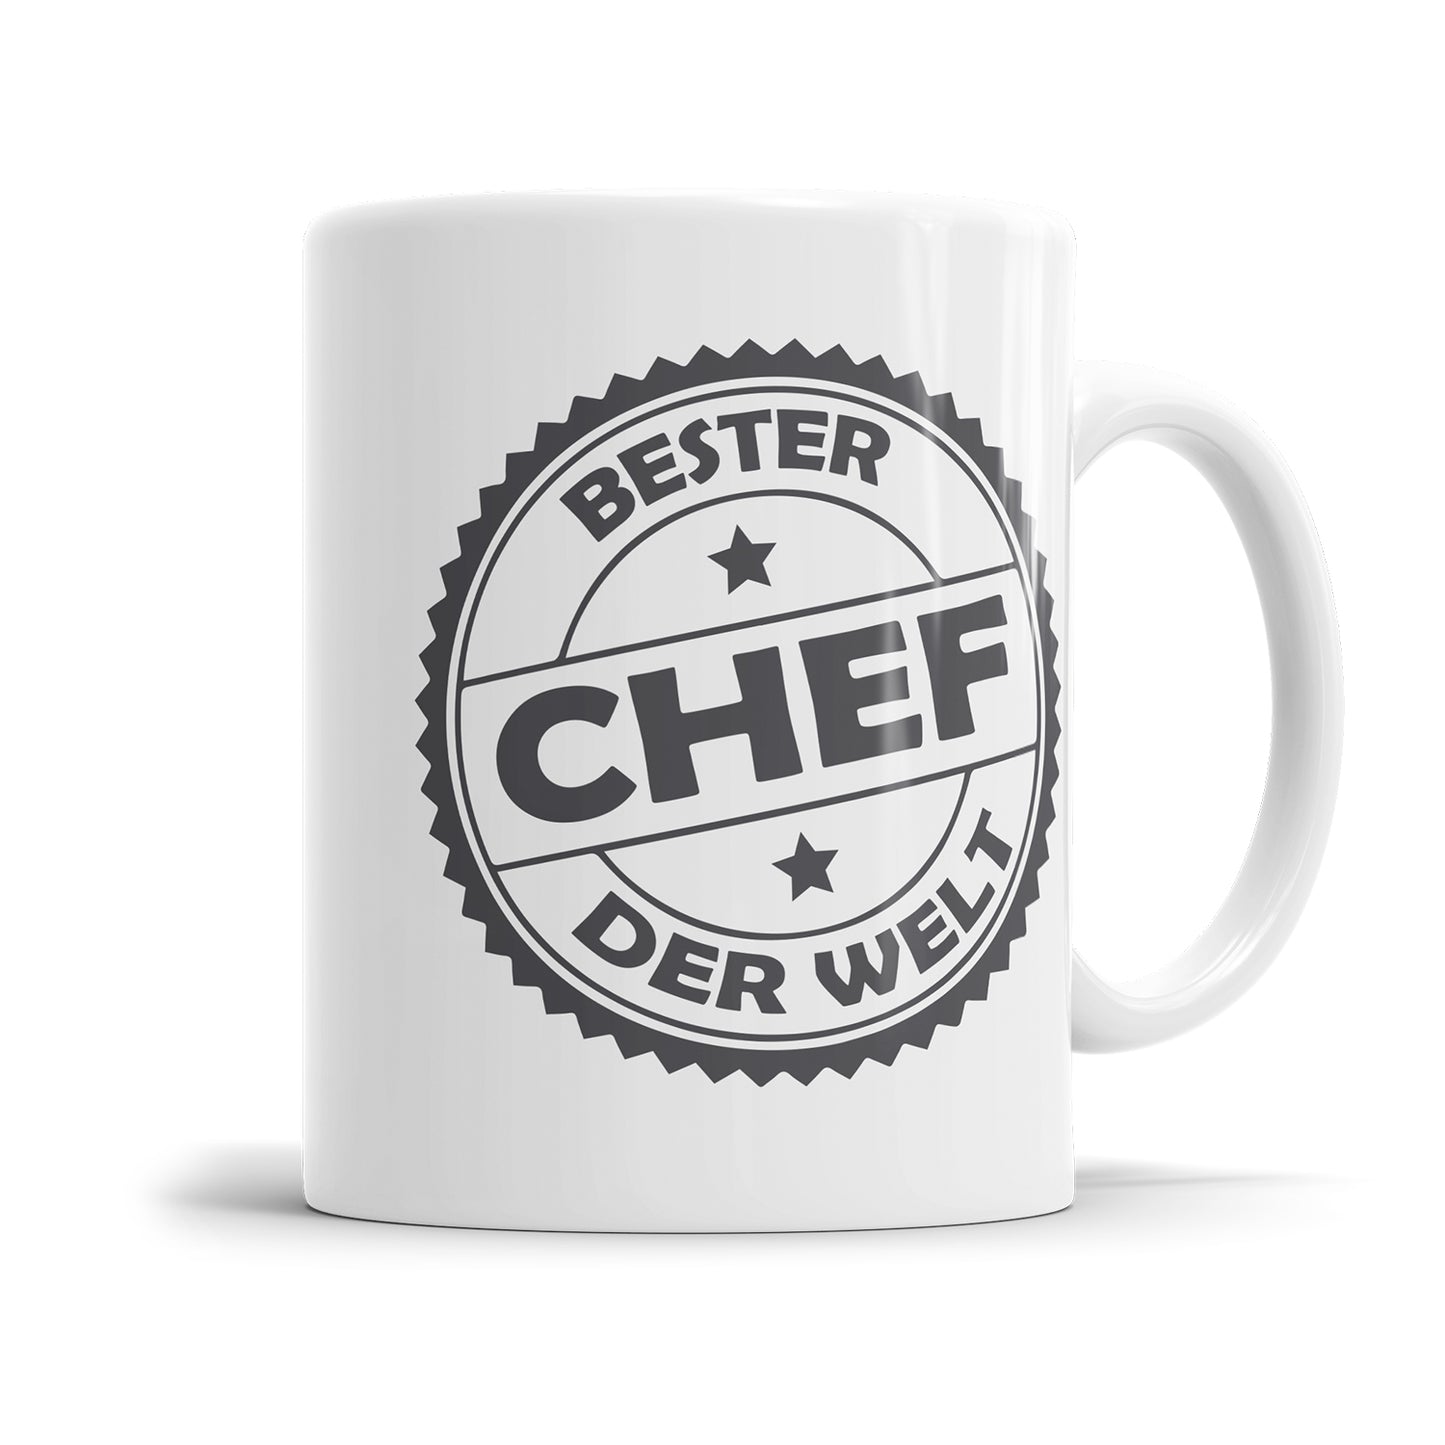 Bester Chef Stempel Design Tasse - Geschenk für den Chef